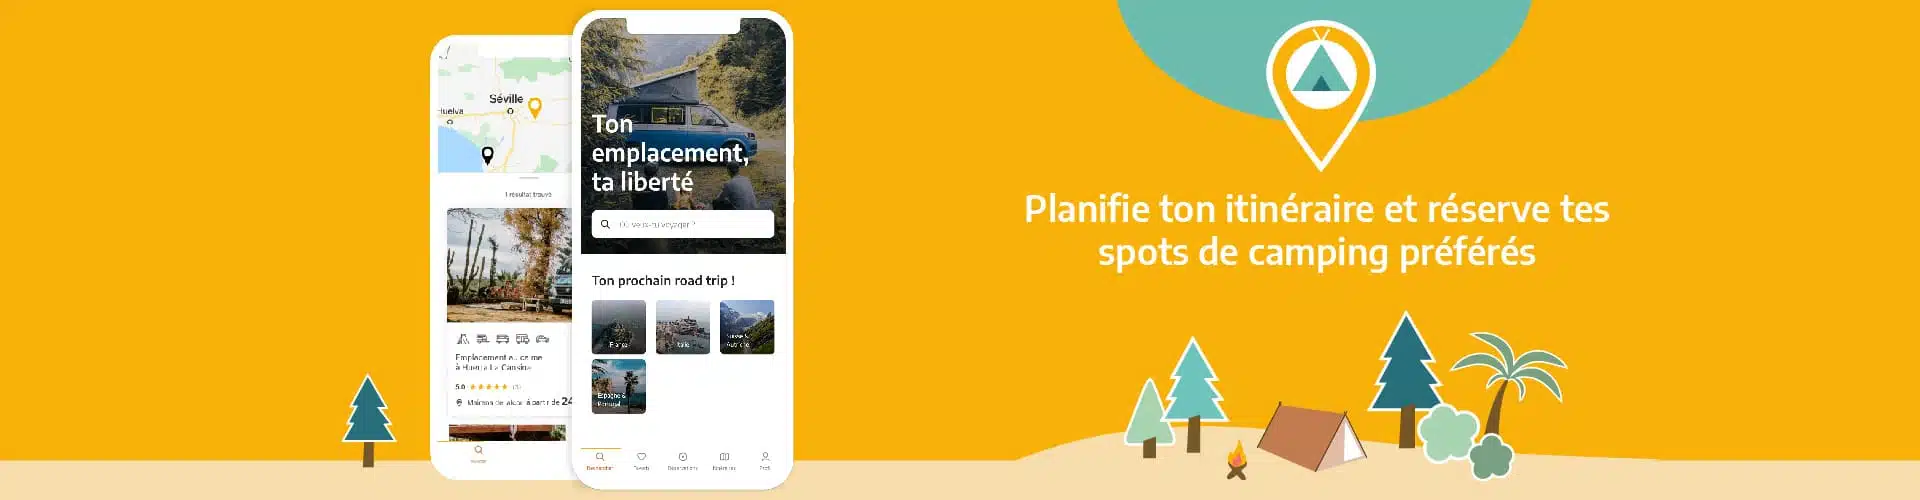 Planifie ton itinéraire et réserve tes spots de camping préférés